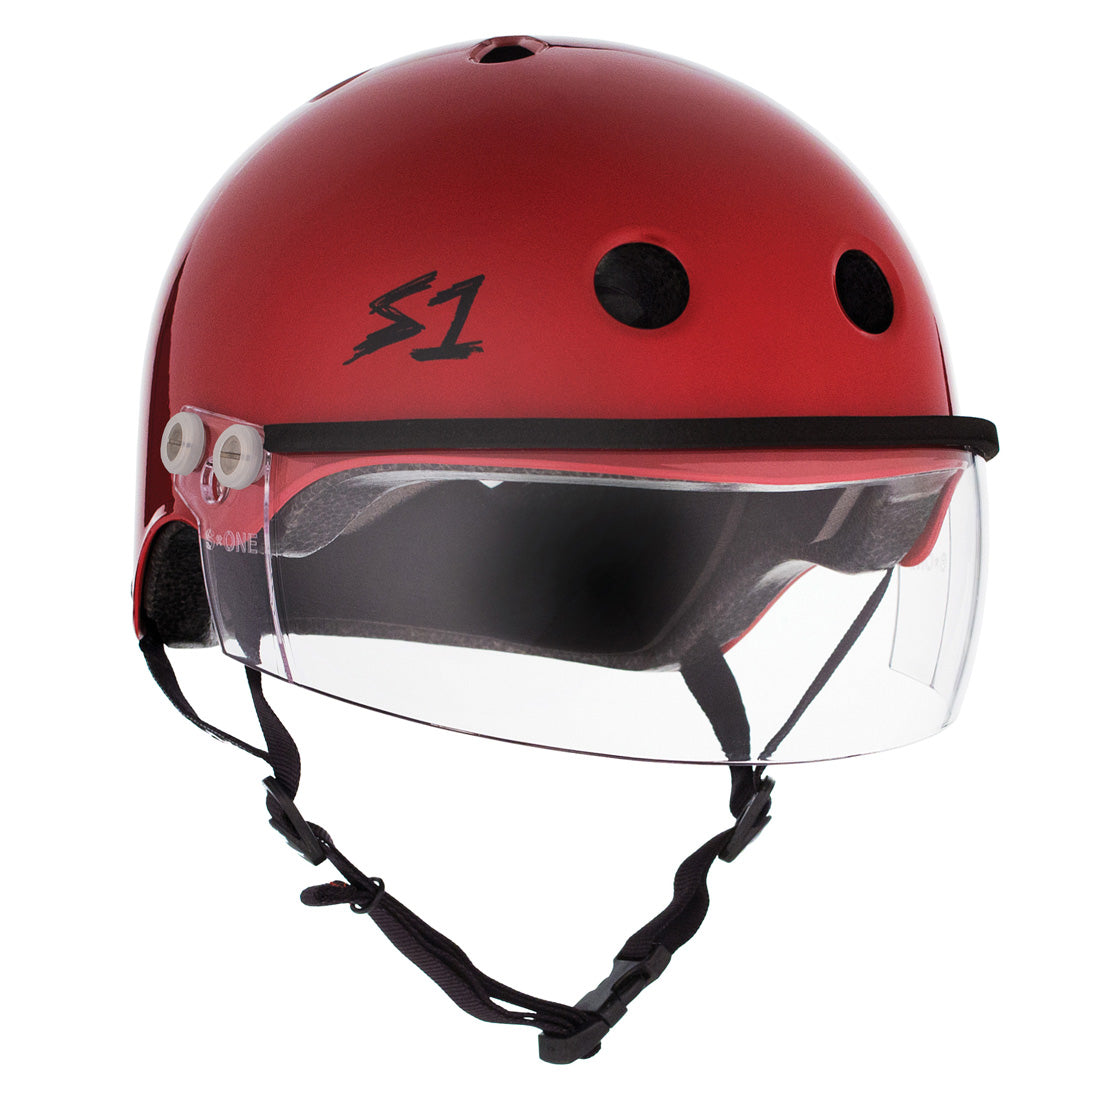 S-One Visor Lifer Helmet - Blood Red Gloss Helmets